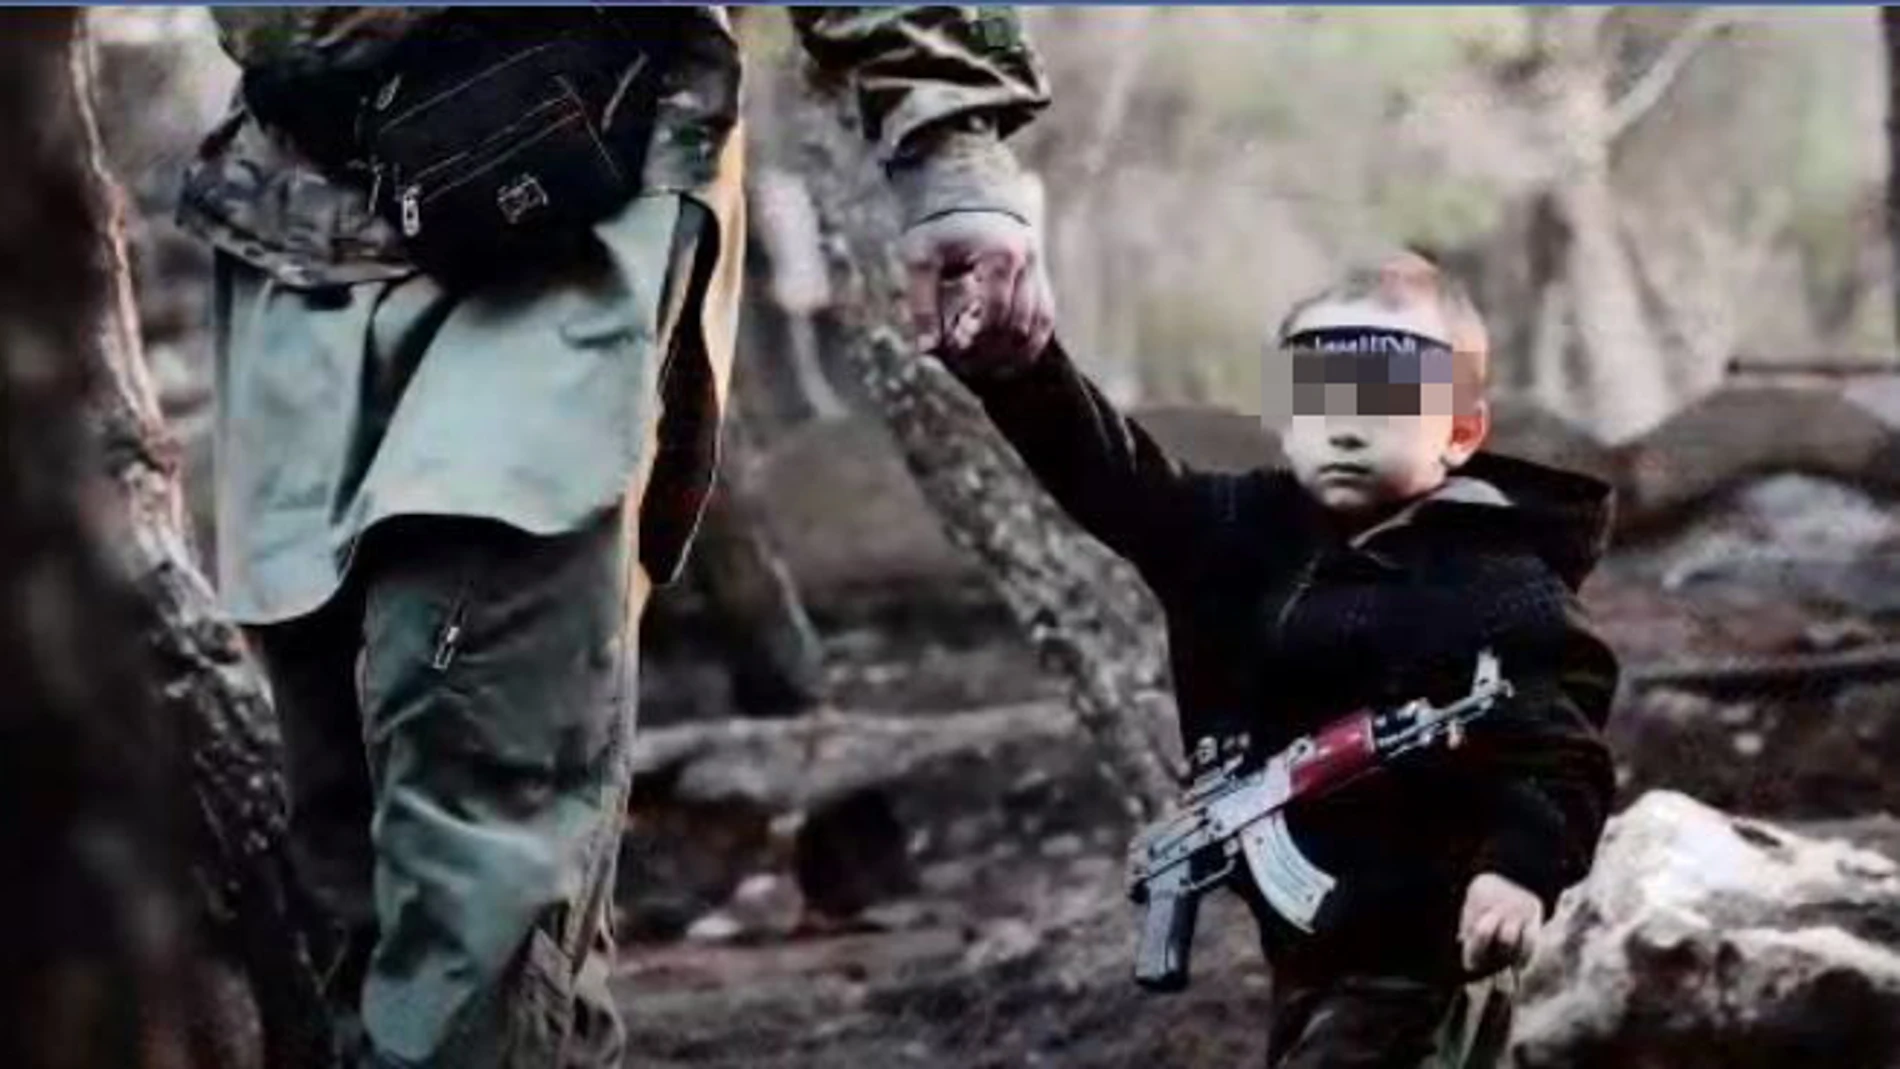 En el vídeo aparece un niño de corta edad armado con un fusil